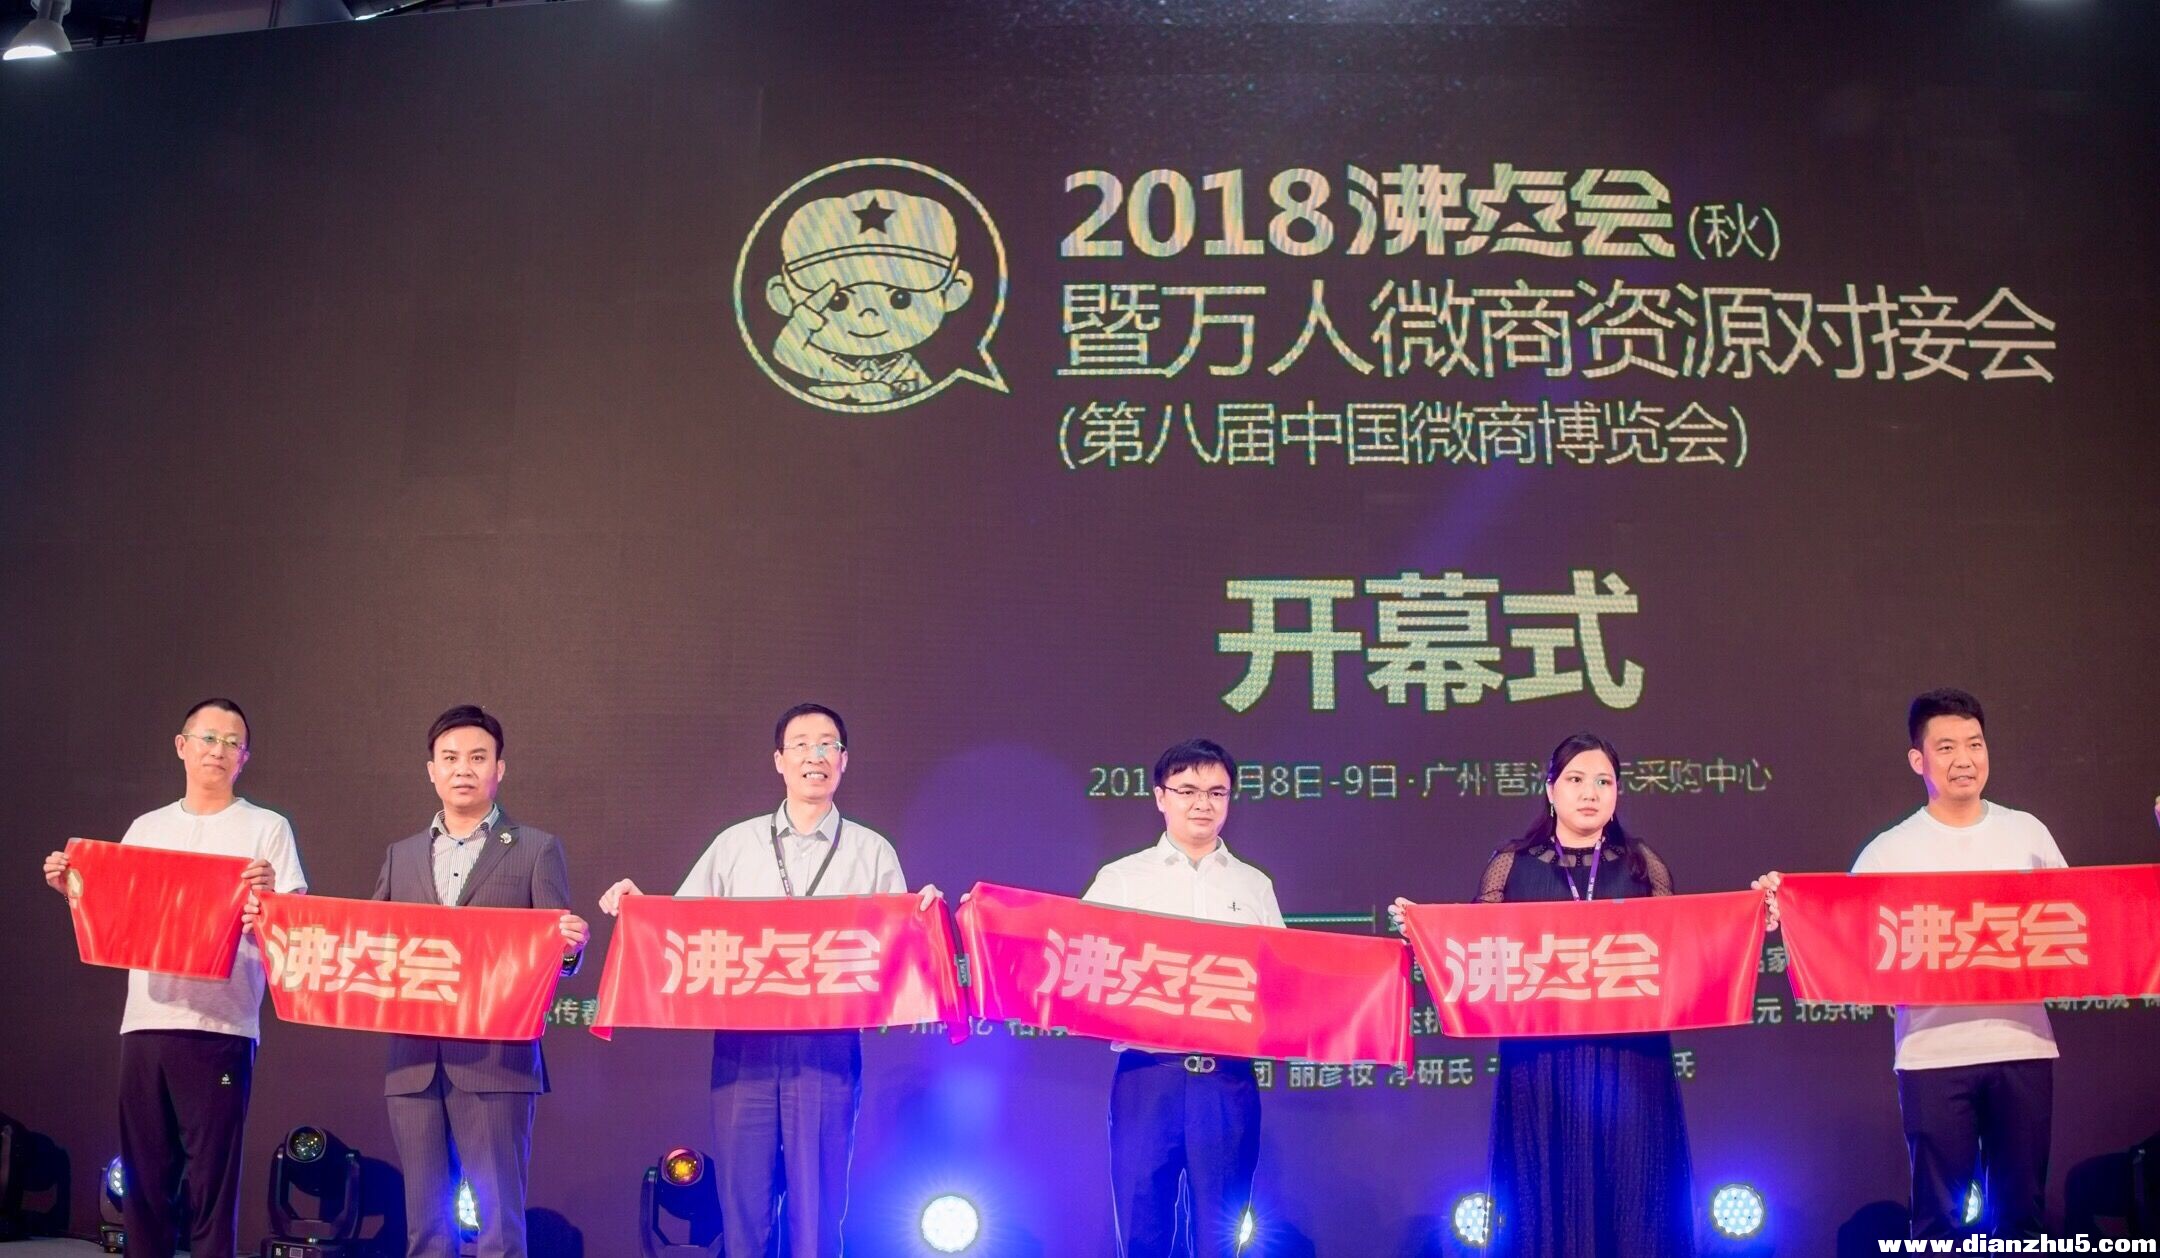 2018沸点会暨万人微商资源对接会在广州举办 